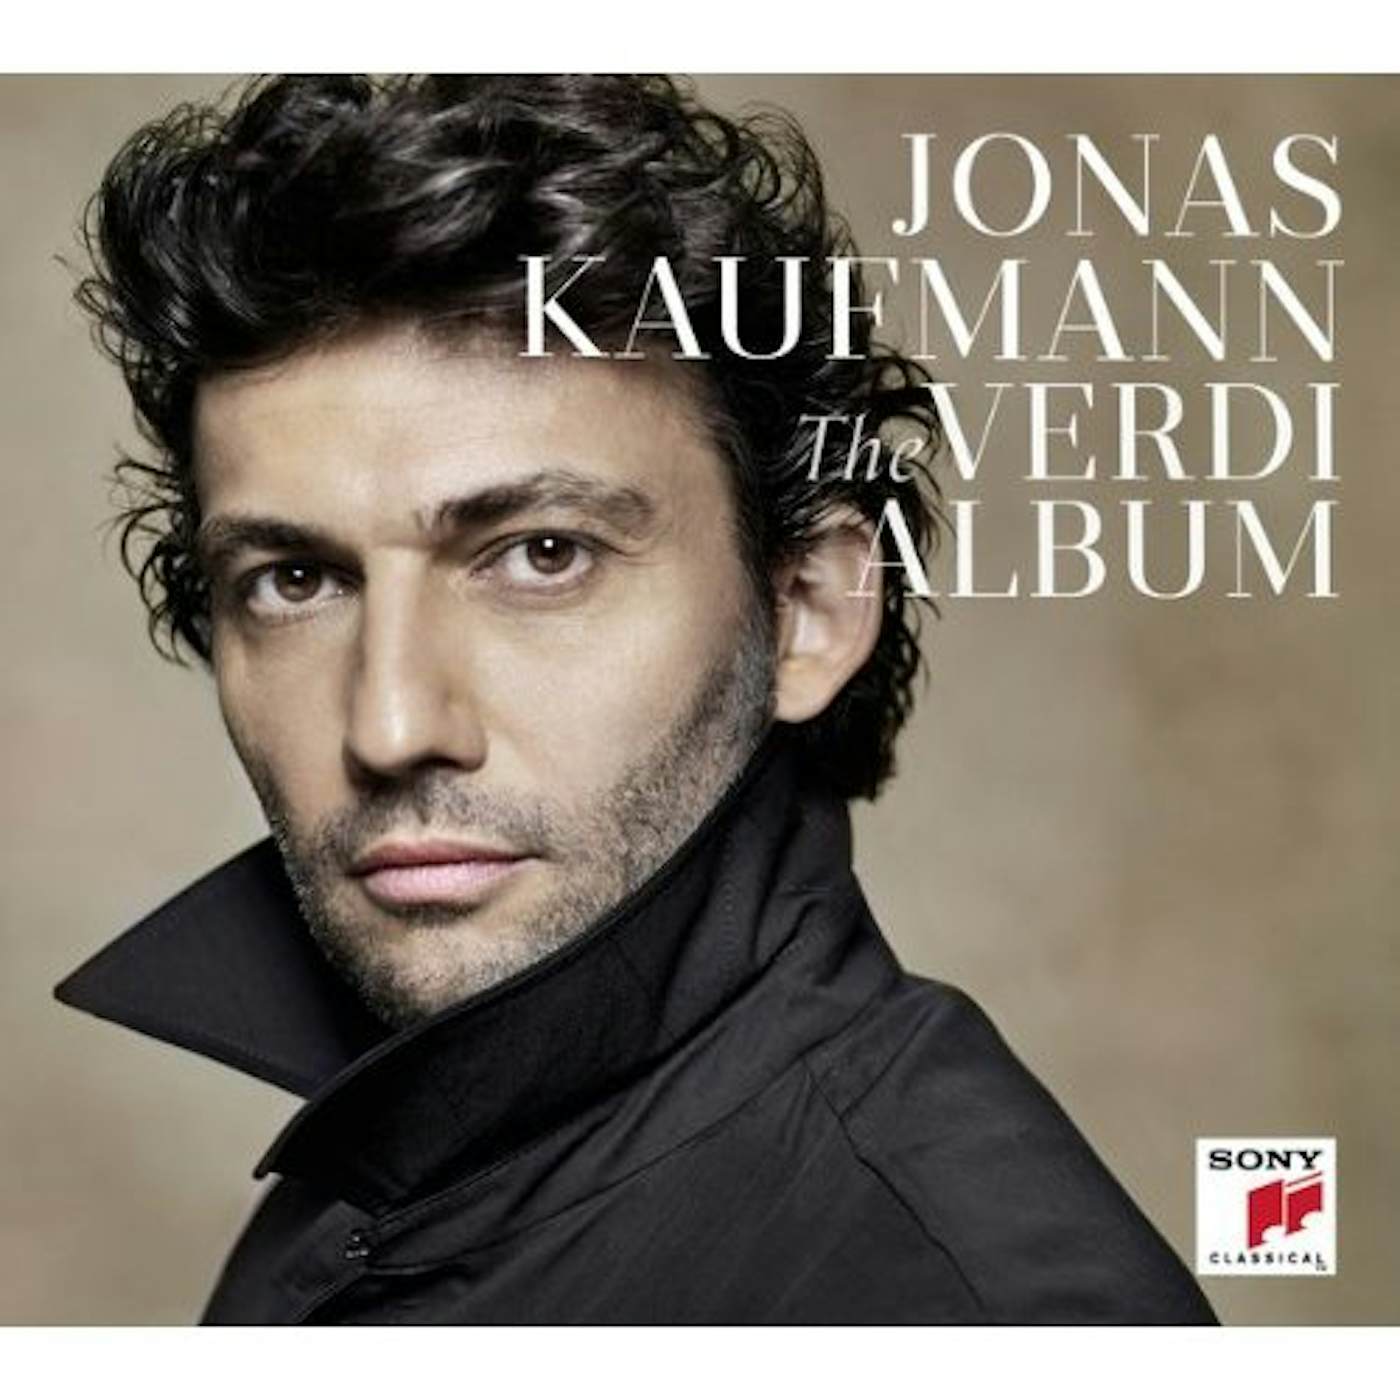 Jonas Kaufmann VERDI ALBUM CD